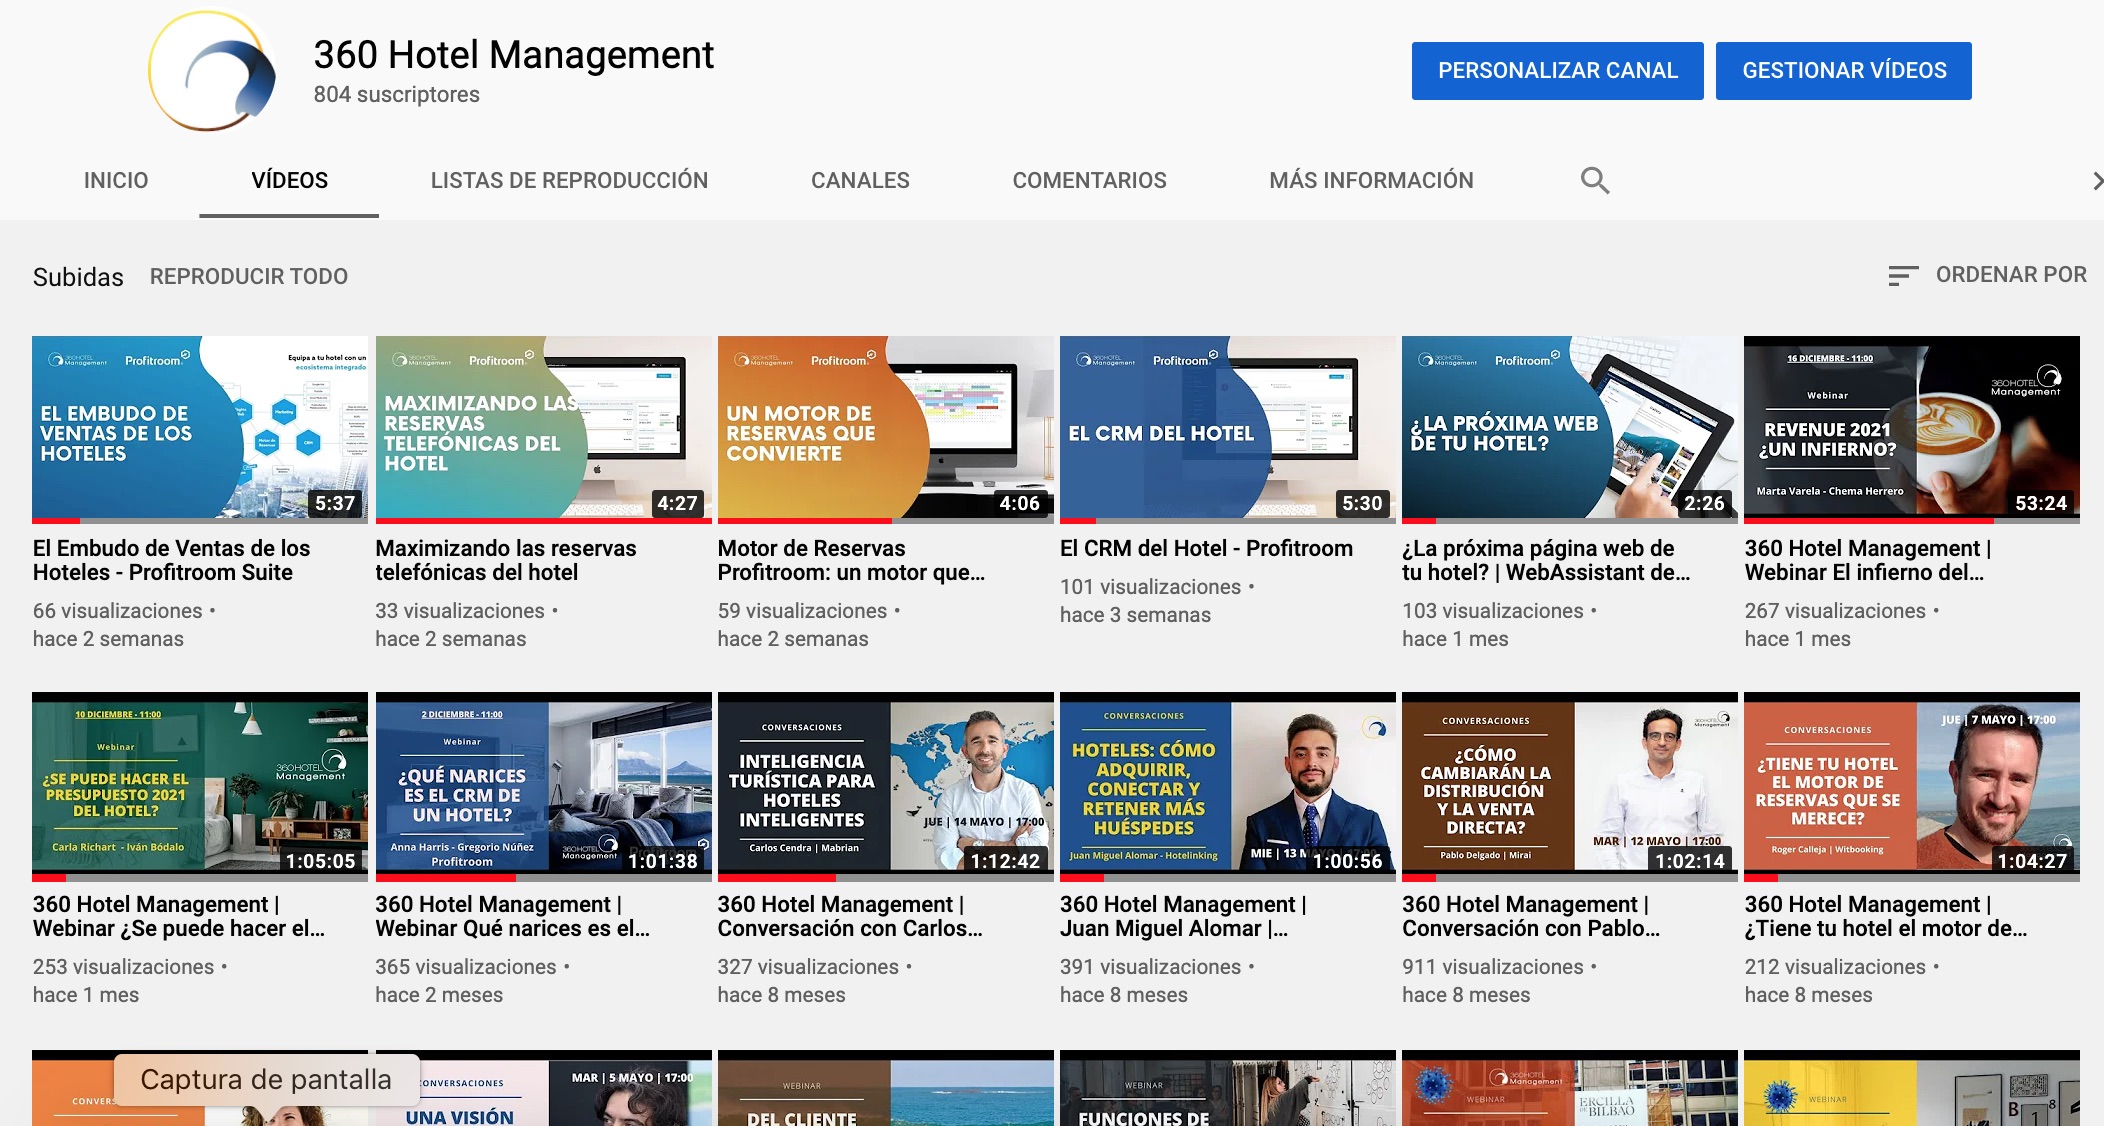 Los 10 vídeos más vistos del canal de Youtube de 360 Hotel Management